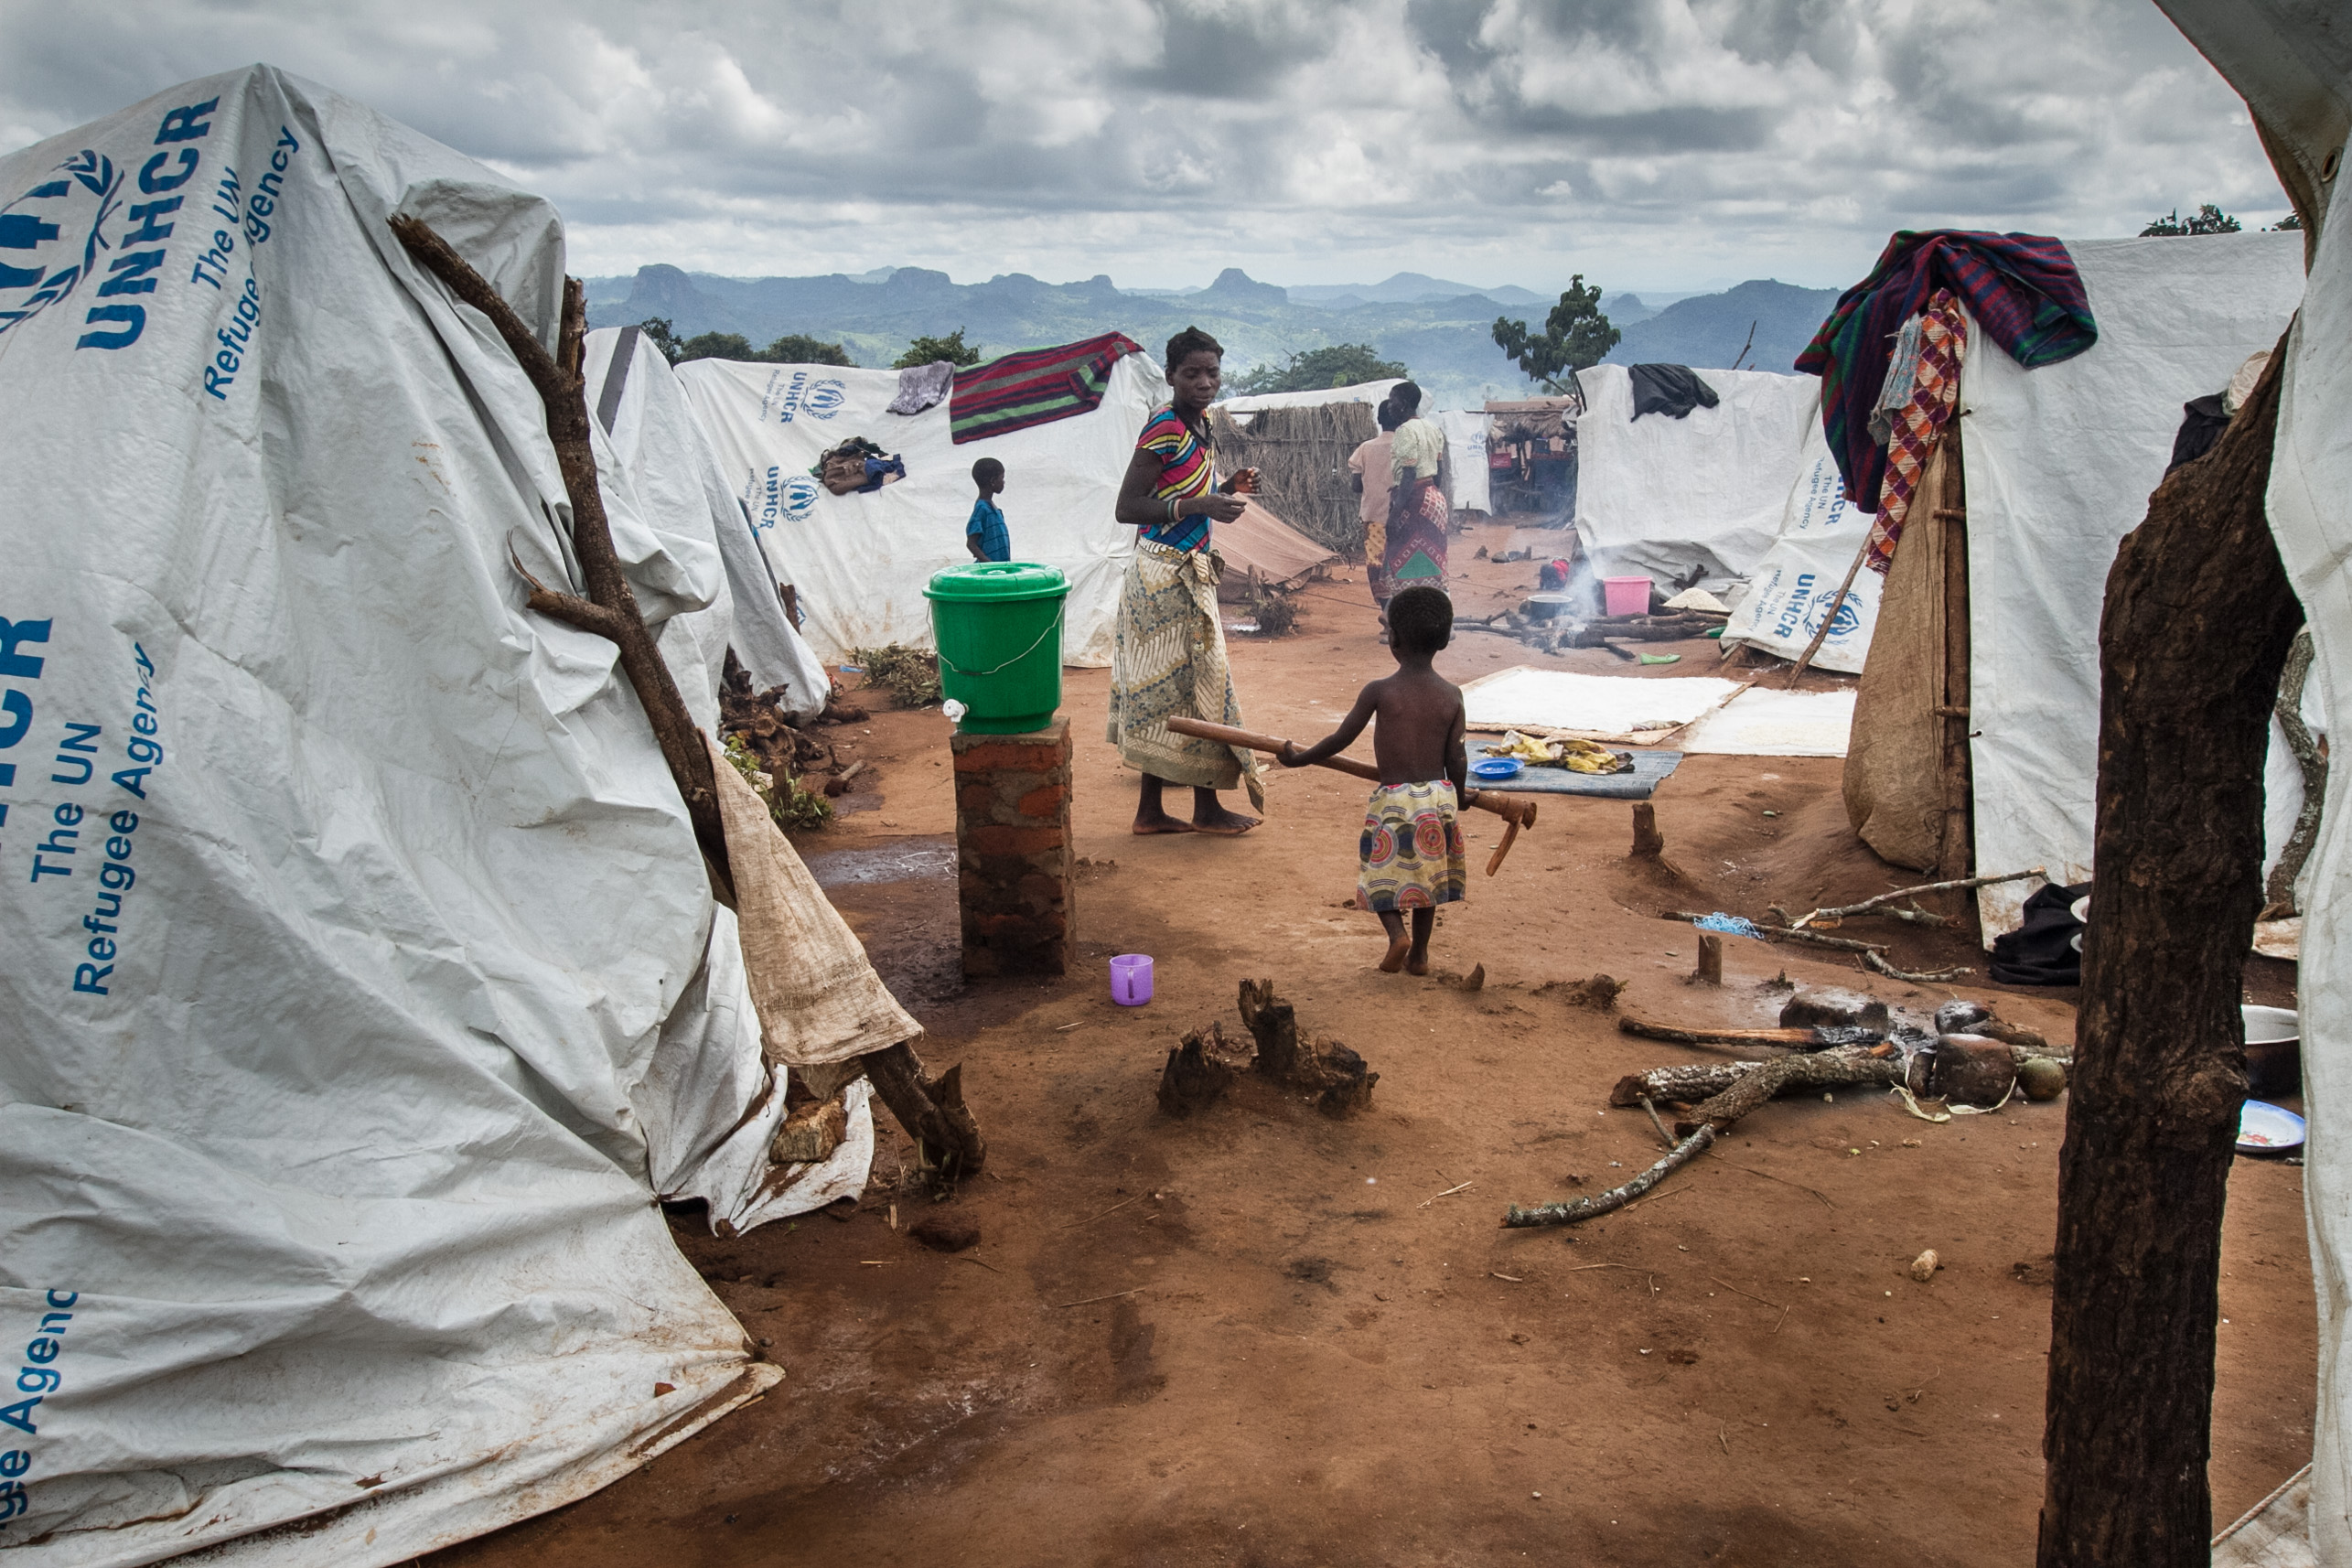 Kapise refugee camp for refugees from Mozambique, Mwanza, Malawi. © 2016 Erico Waga, Courtesy of Photoshare